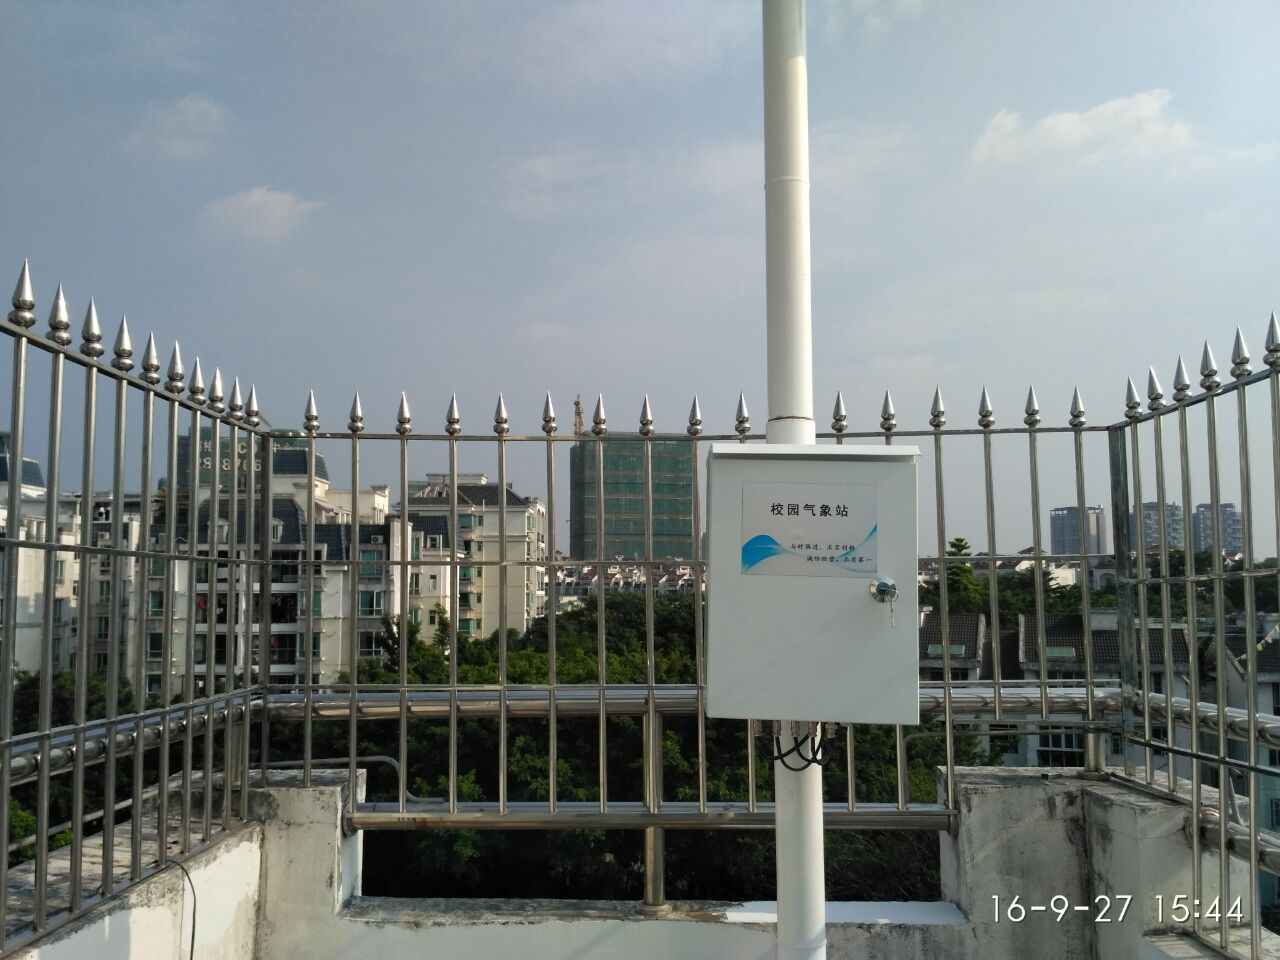 深圳自动气象观测站 气象监测系统 安装简单 可配LED显示屏 无线传输